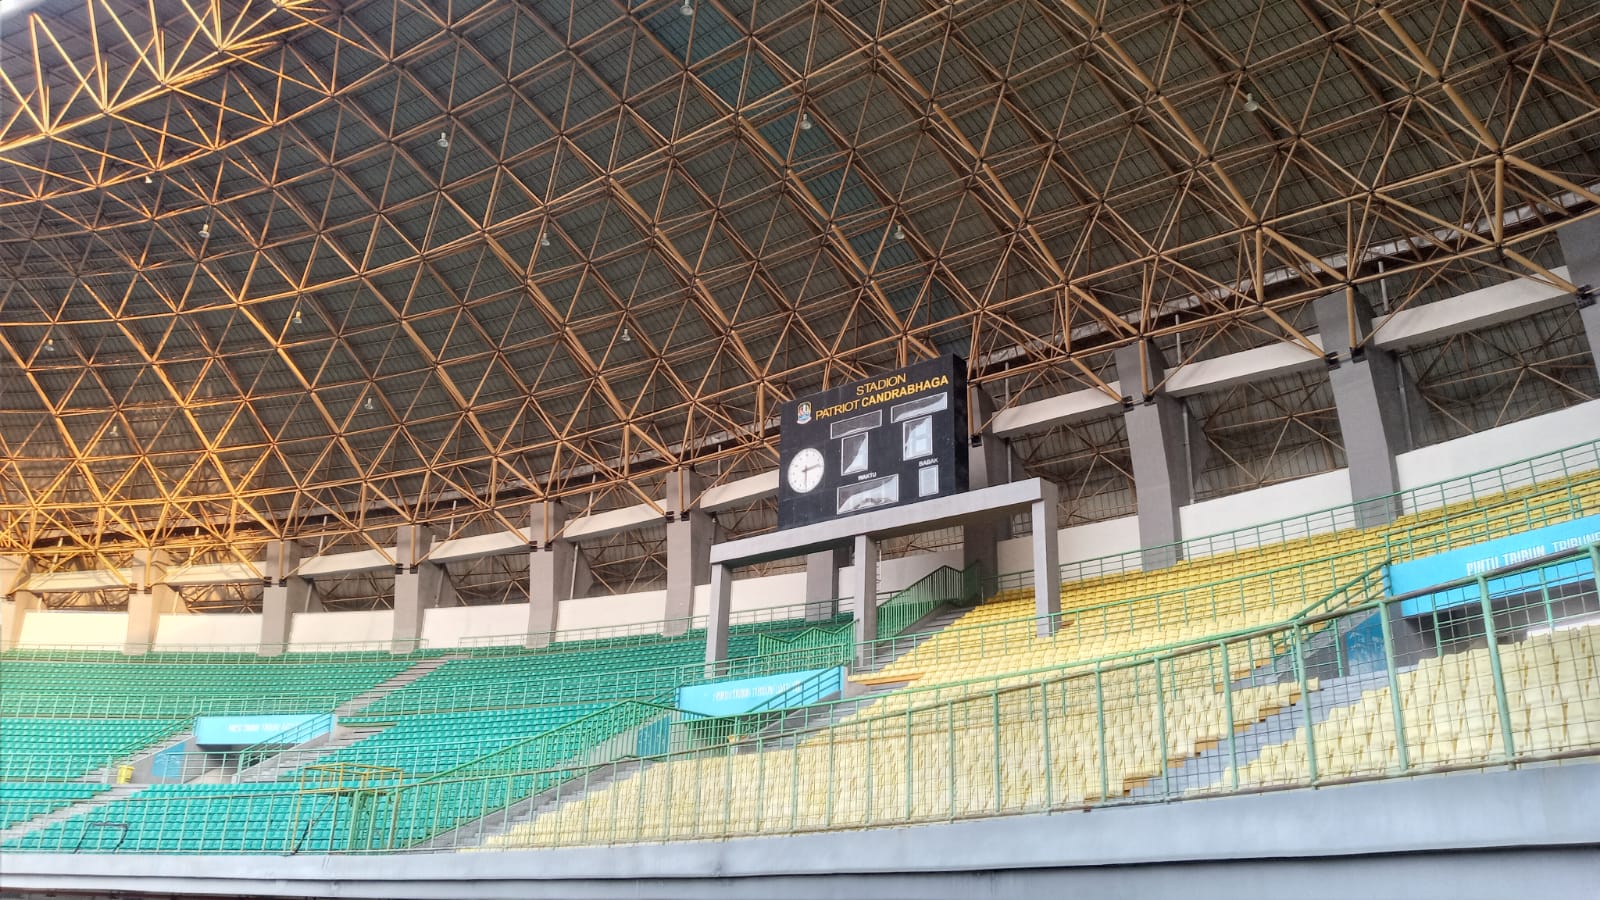 Resmi, Stadion Patriot Chandrabaga Kota Bekasi Bakal Digunakan Untuk Pertandingan Piala AFF 2022